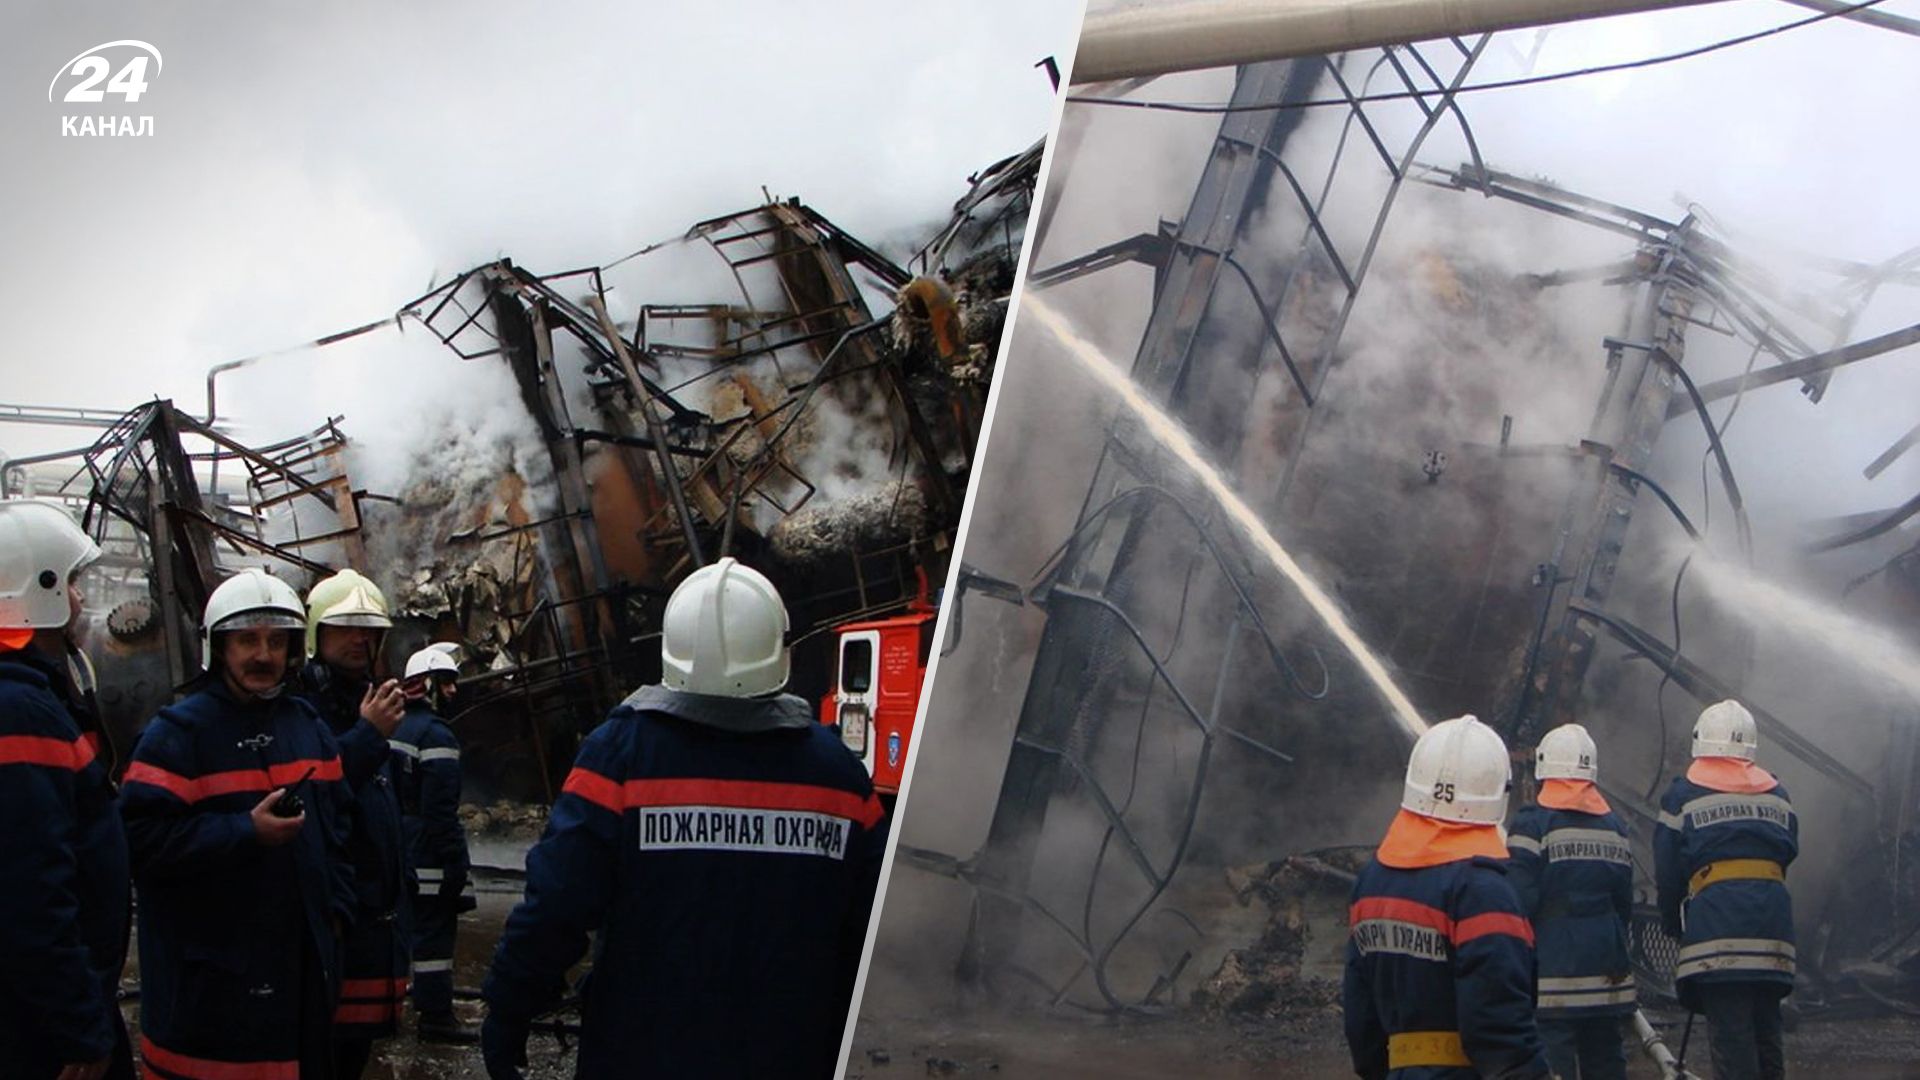 Пожар на Лукойле в Волгограде - крупнейшем производителе нефтепродуктов в округе